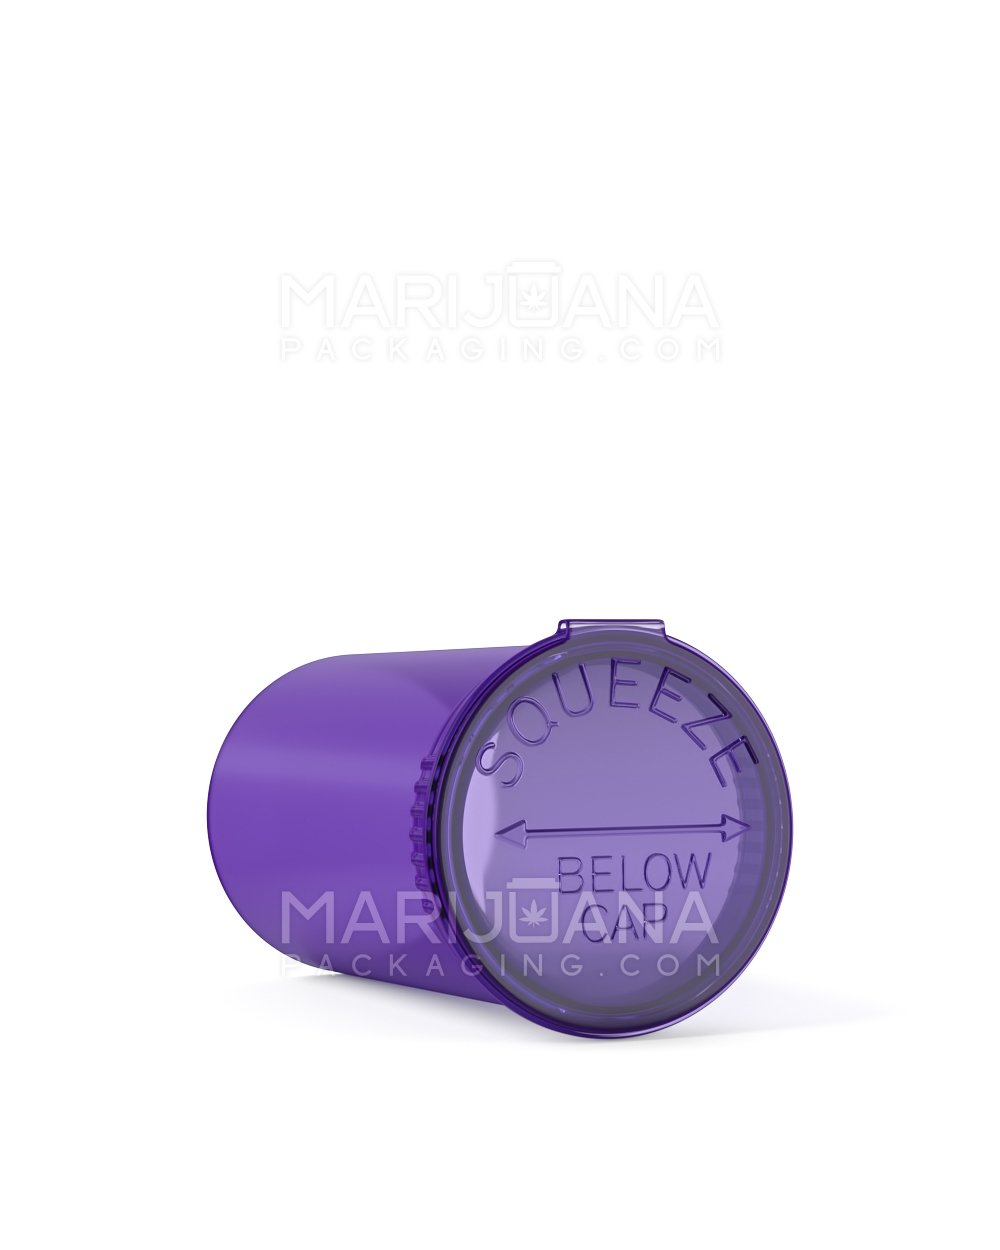 Child Resistant | Transparent Purple Pop Top Bottles | 19dr - 3.5g - 225 Count - 3